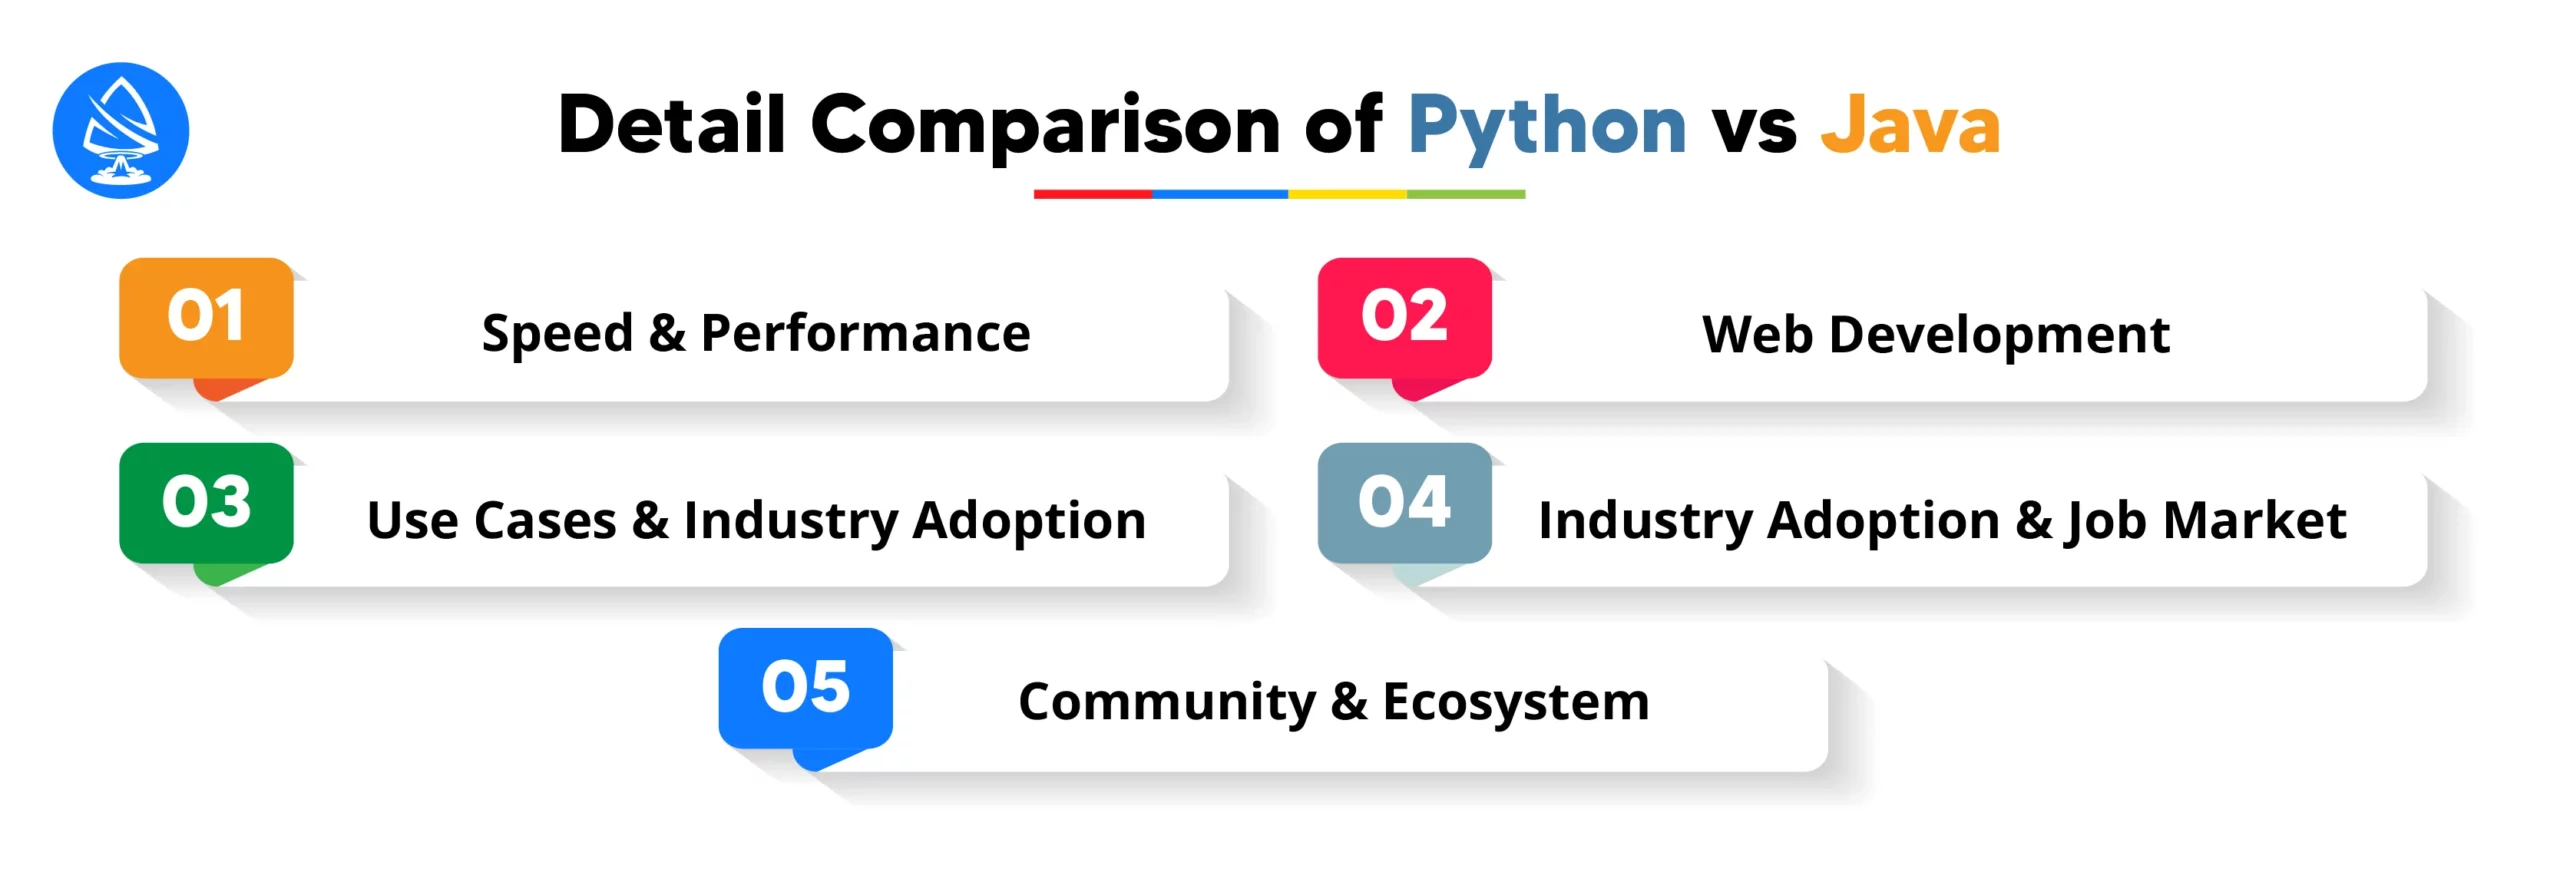 Detail Comparison of Java vs Python